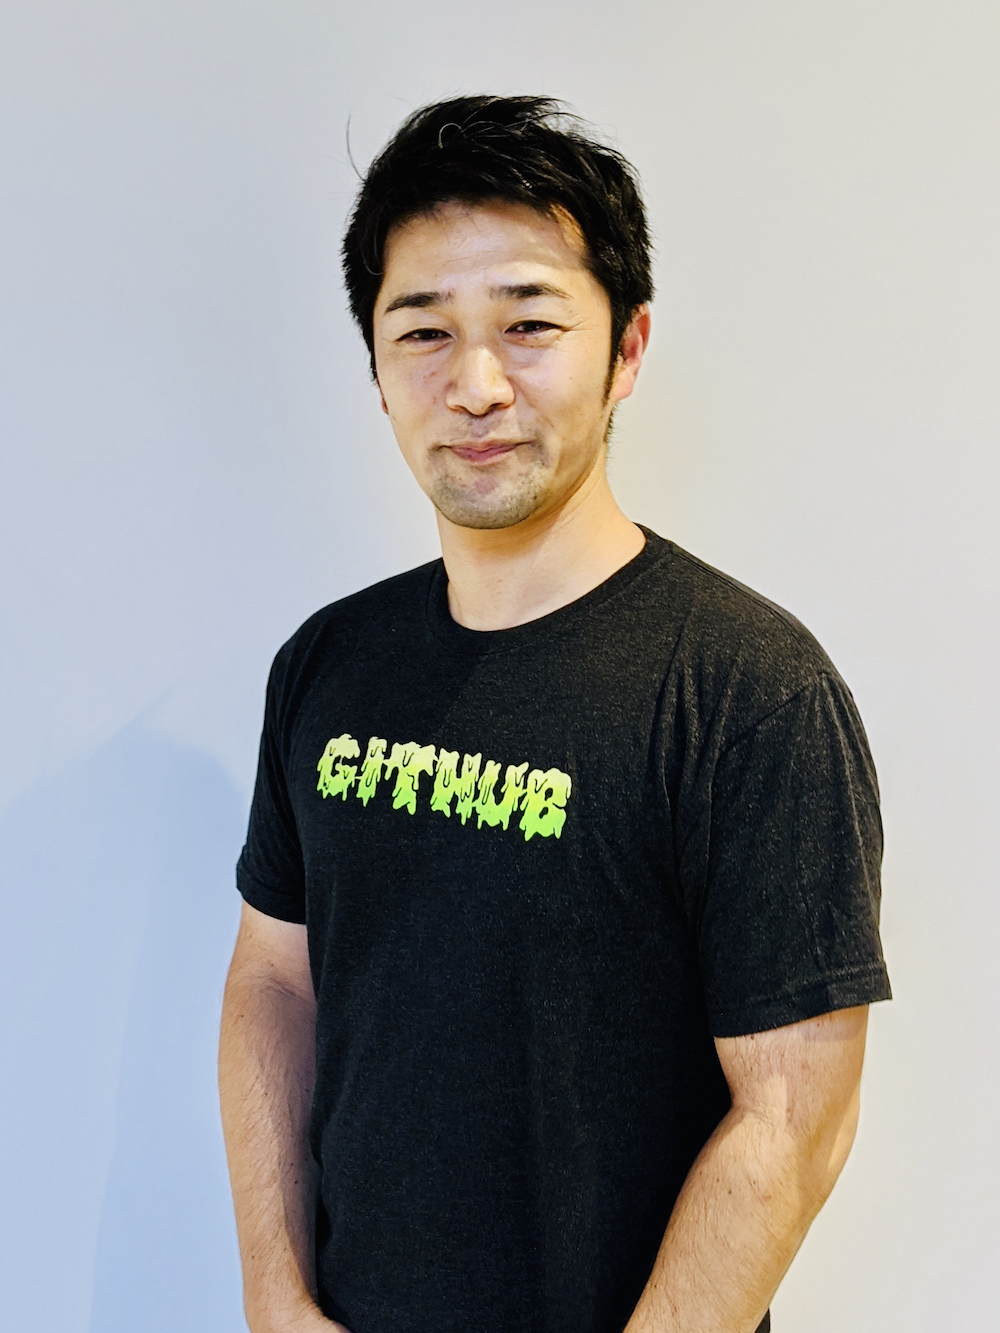 GitHub Japanリージョナルセールスディレクター 山銅 章太さん